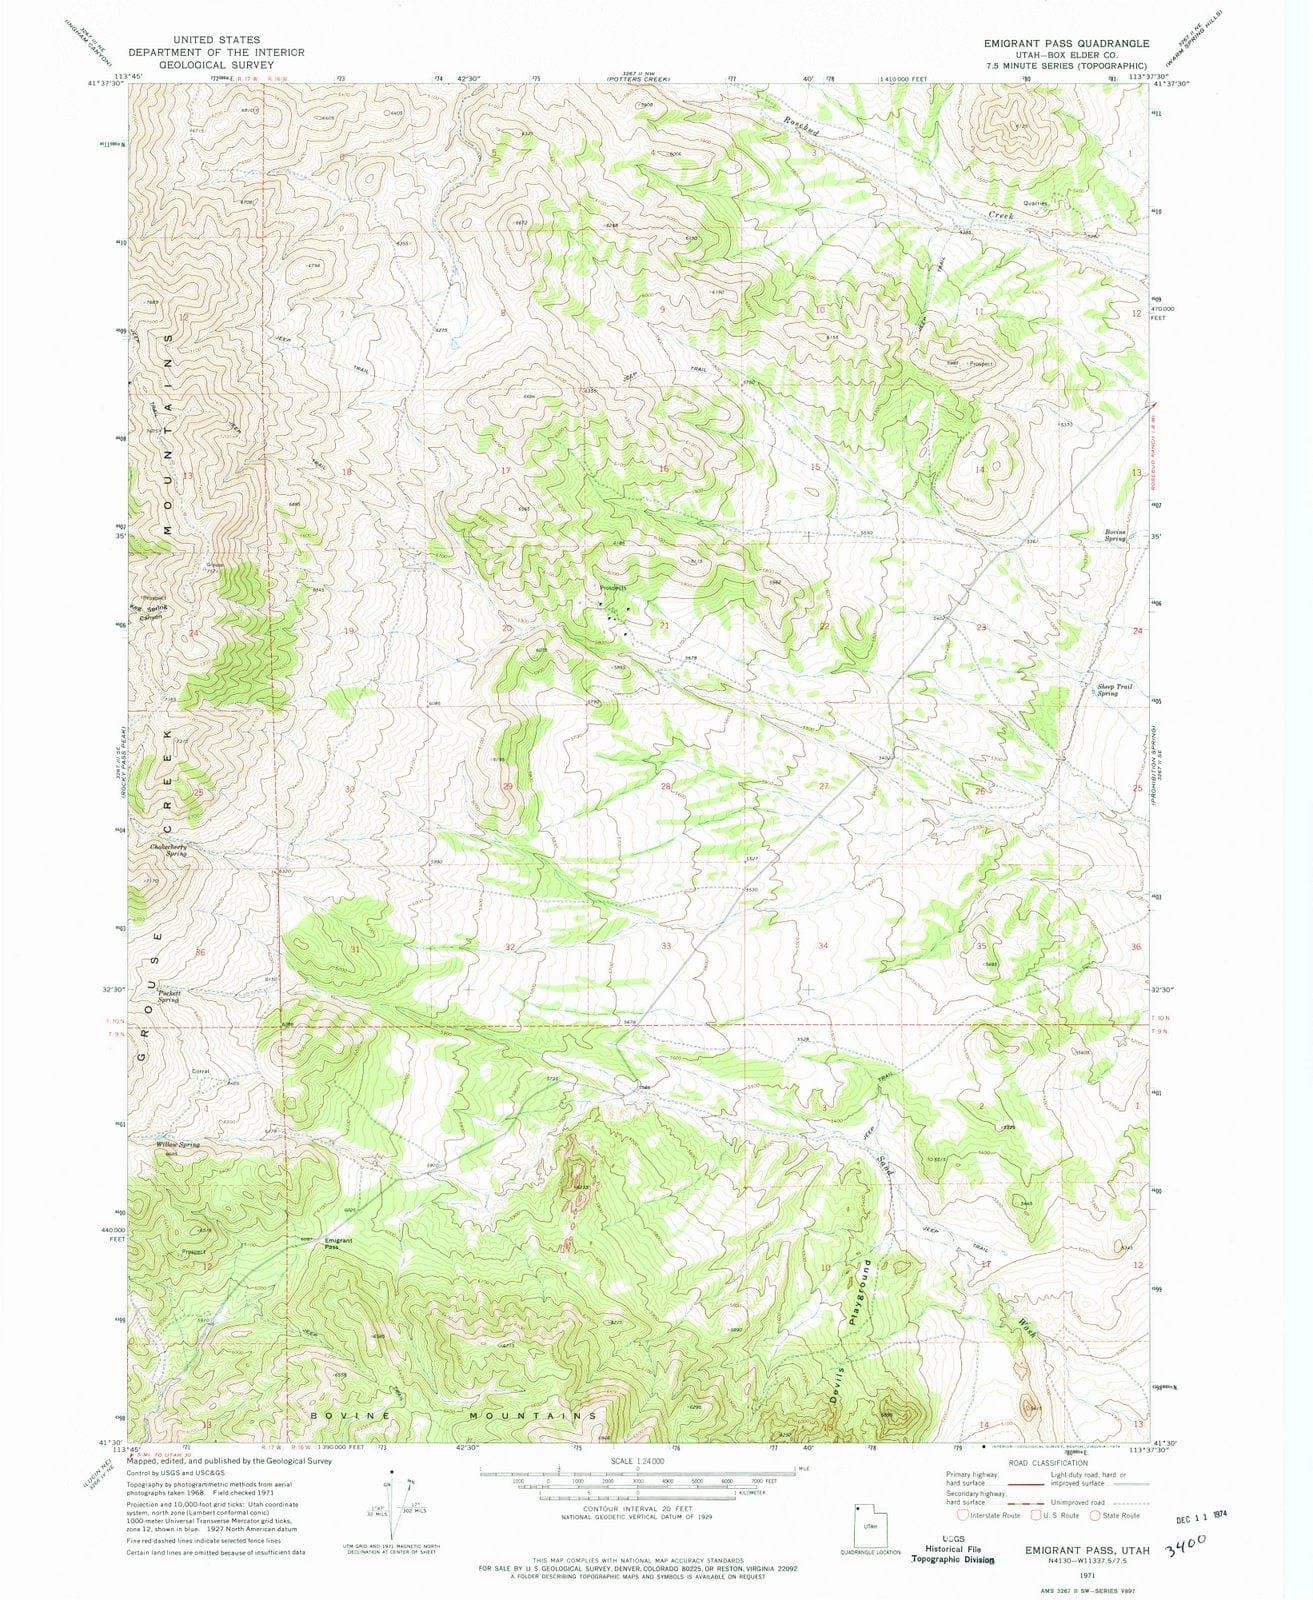 1971 Emigrant Pass, UT - Utah - USGS Topographic Map